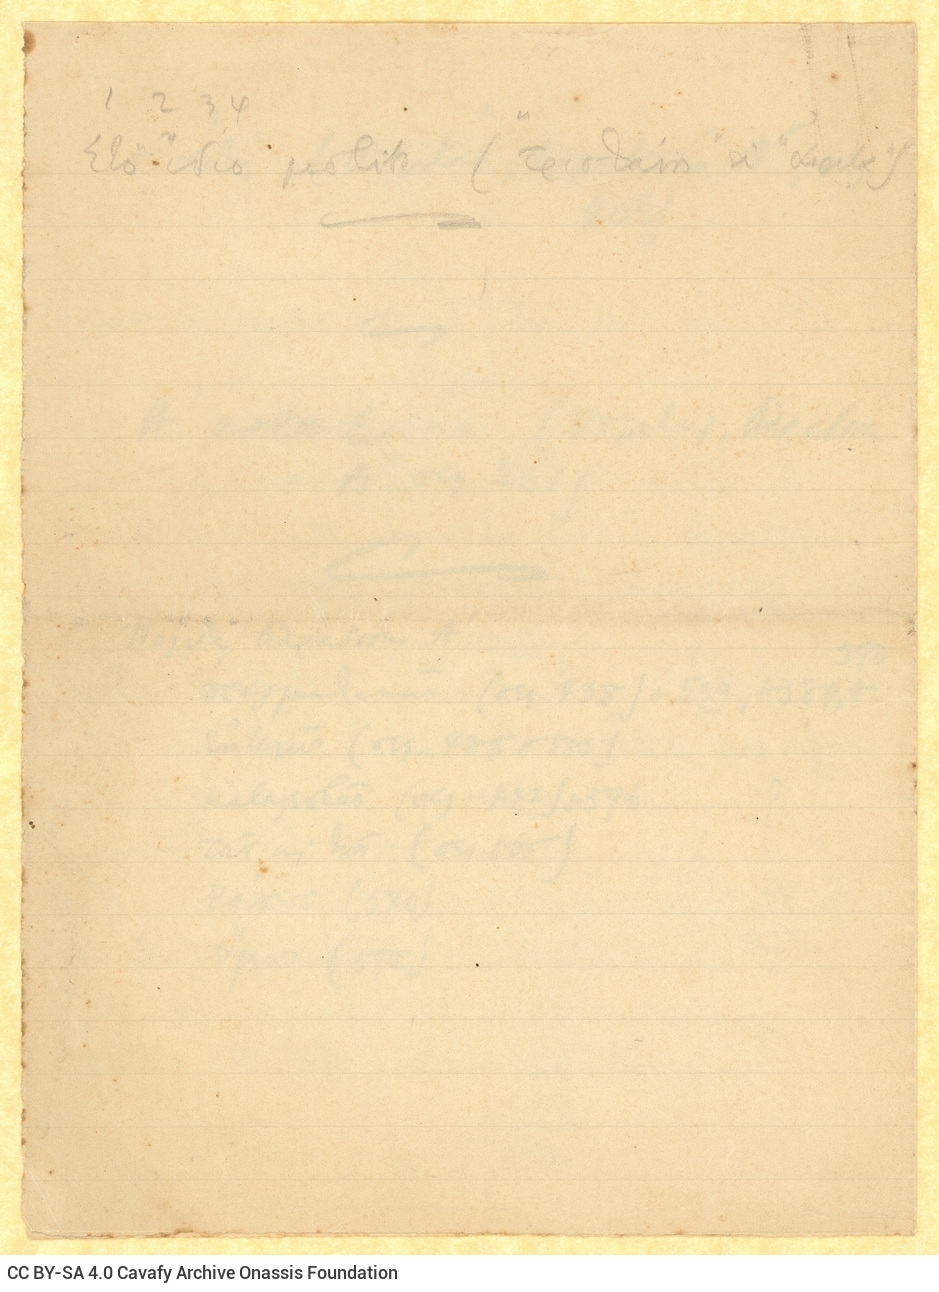 Χειρόγραφες σημειώσεις του Καβάφη για τη γλώσσα, σε δύο διαγραμμισ